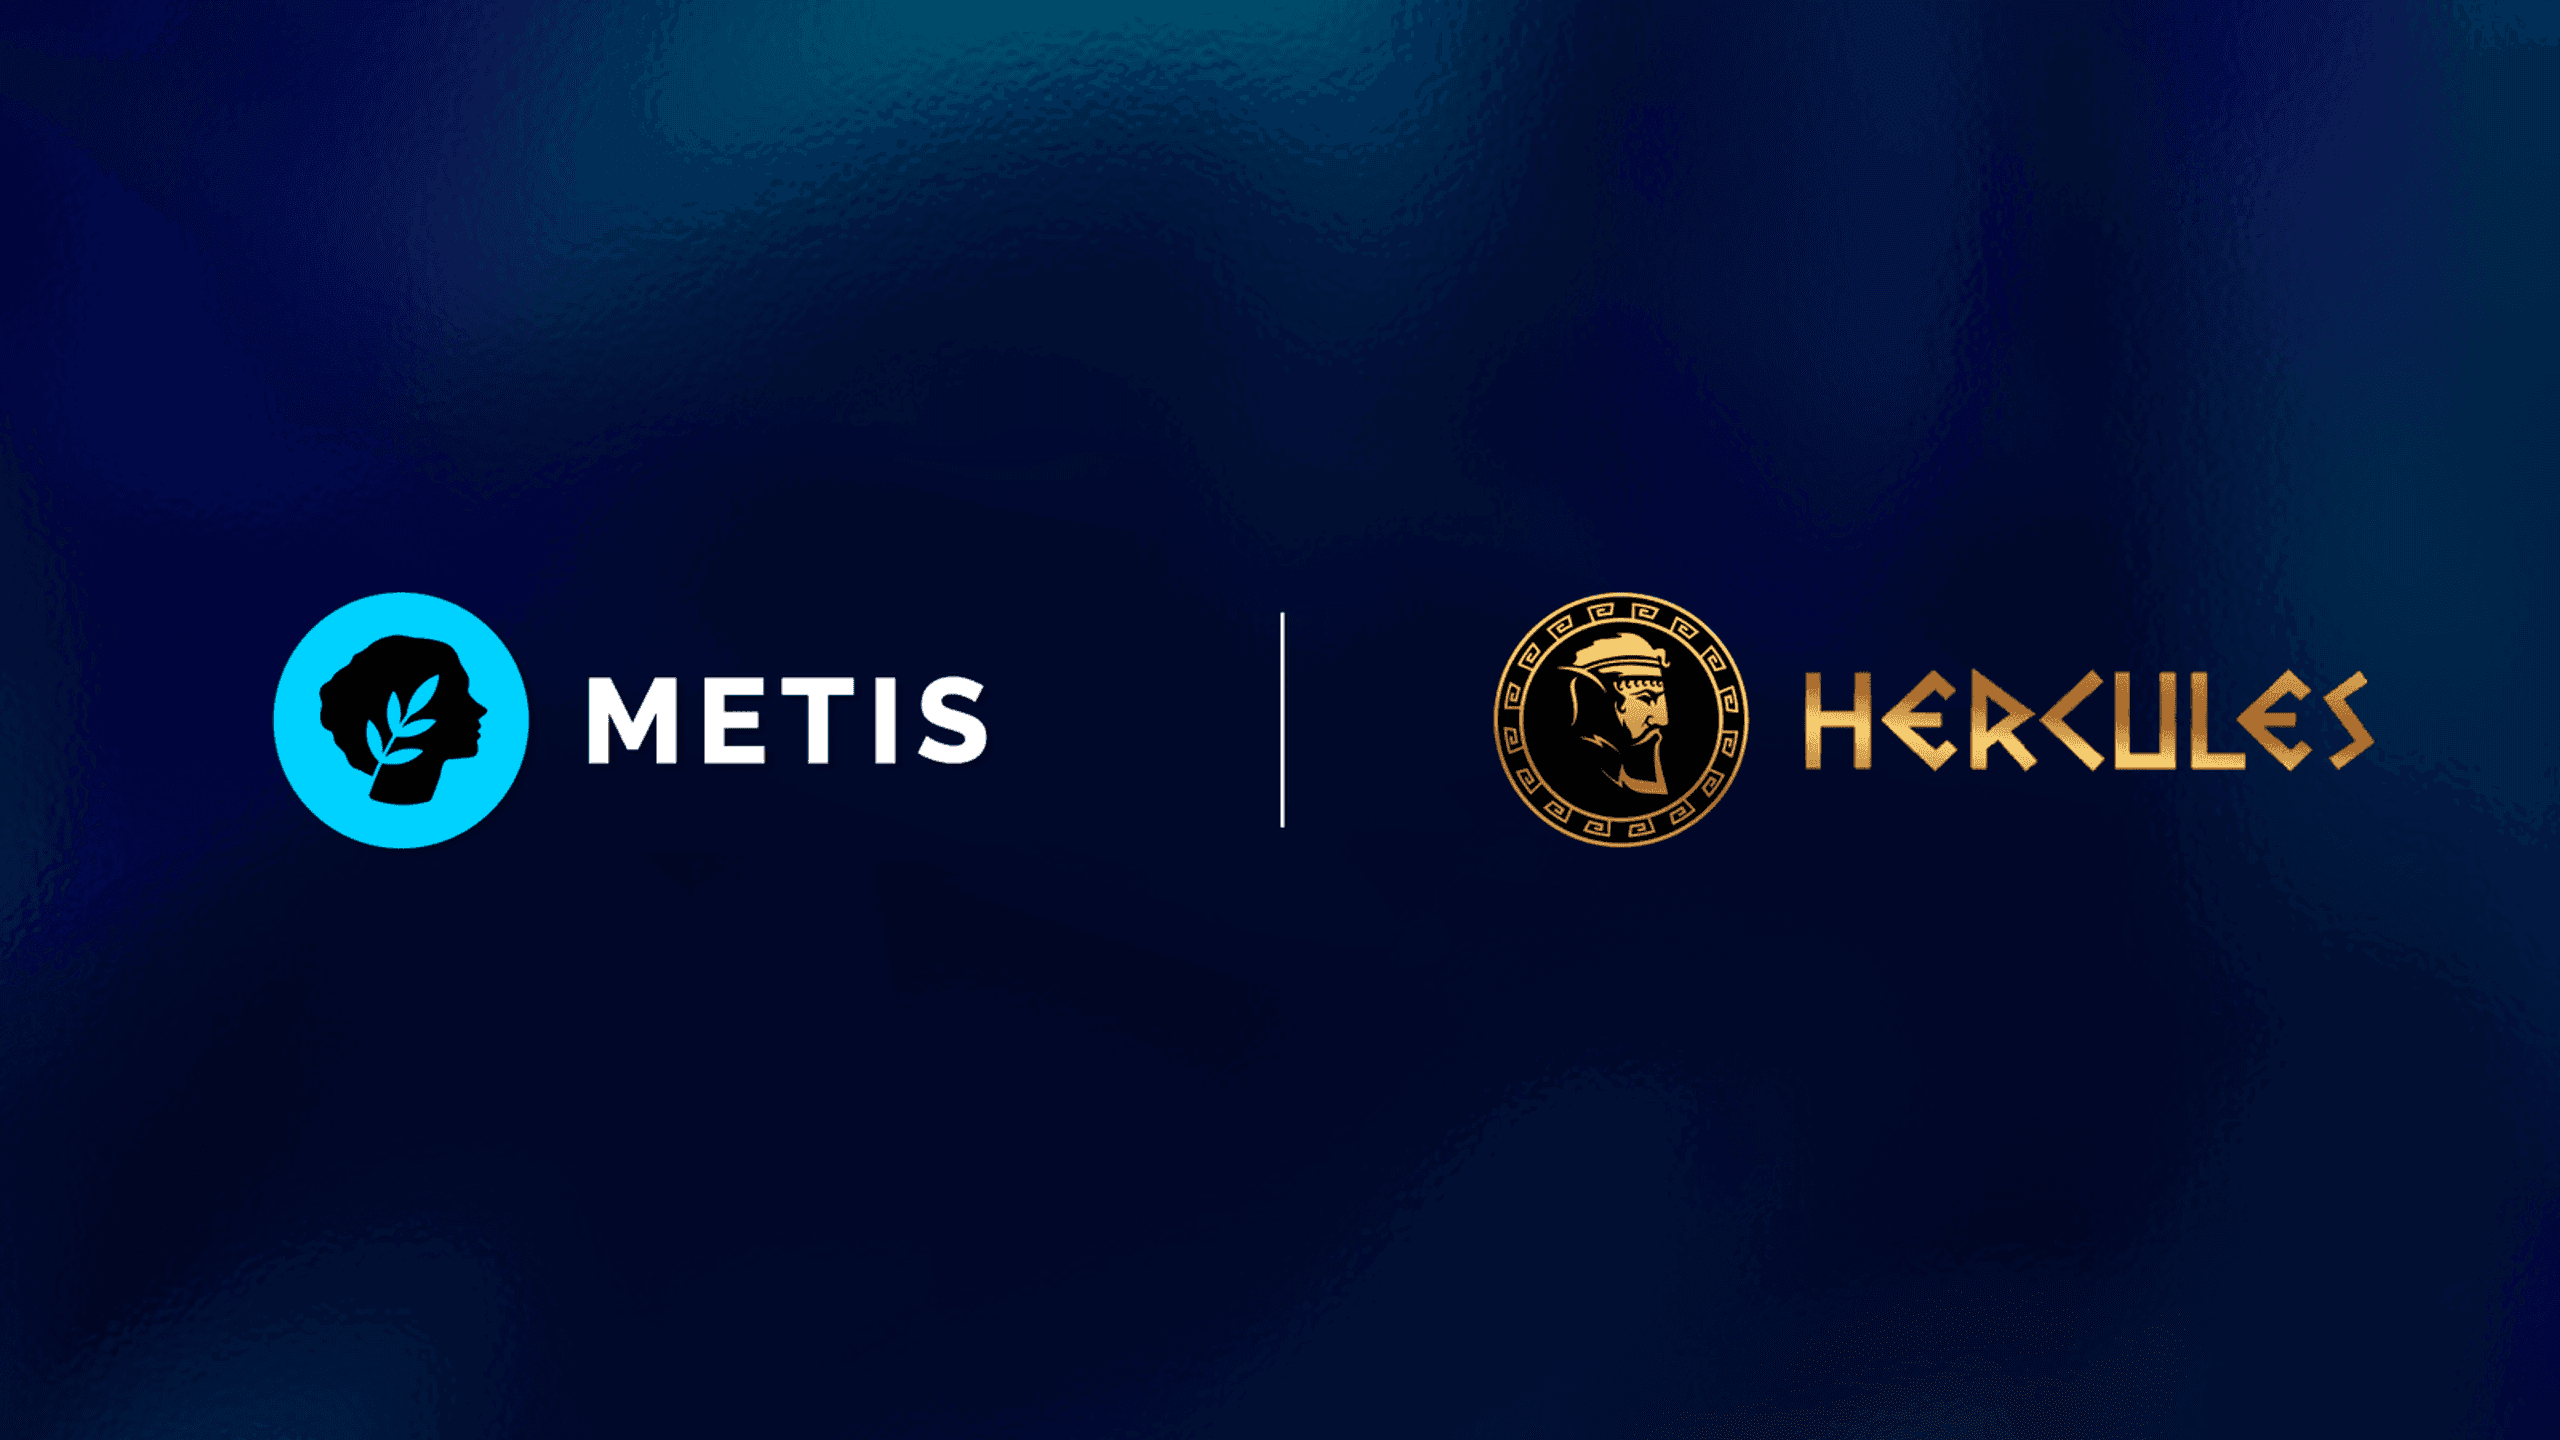 hercules được hỗ trợ bởi metis